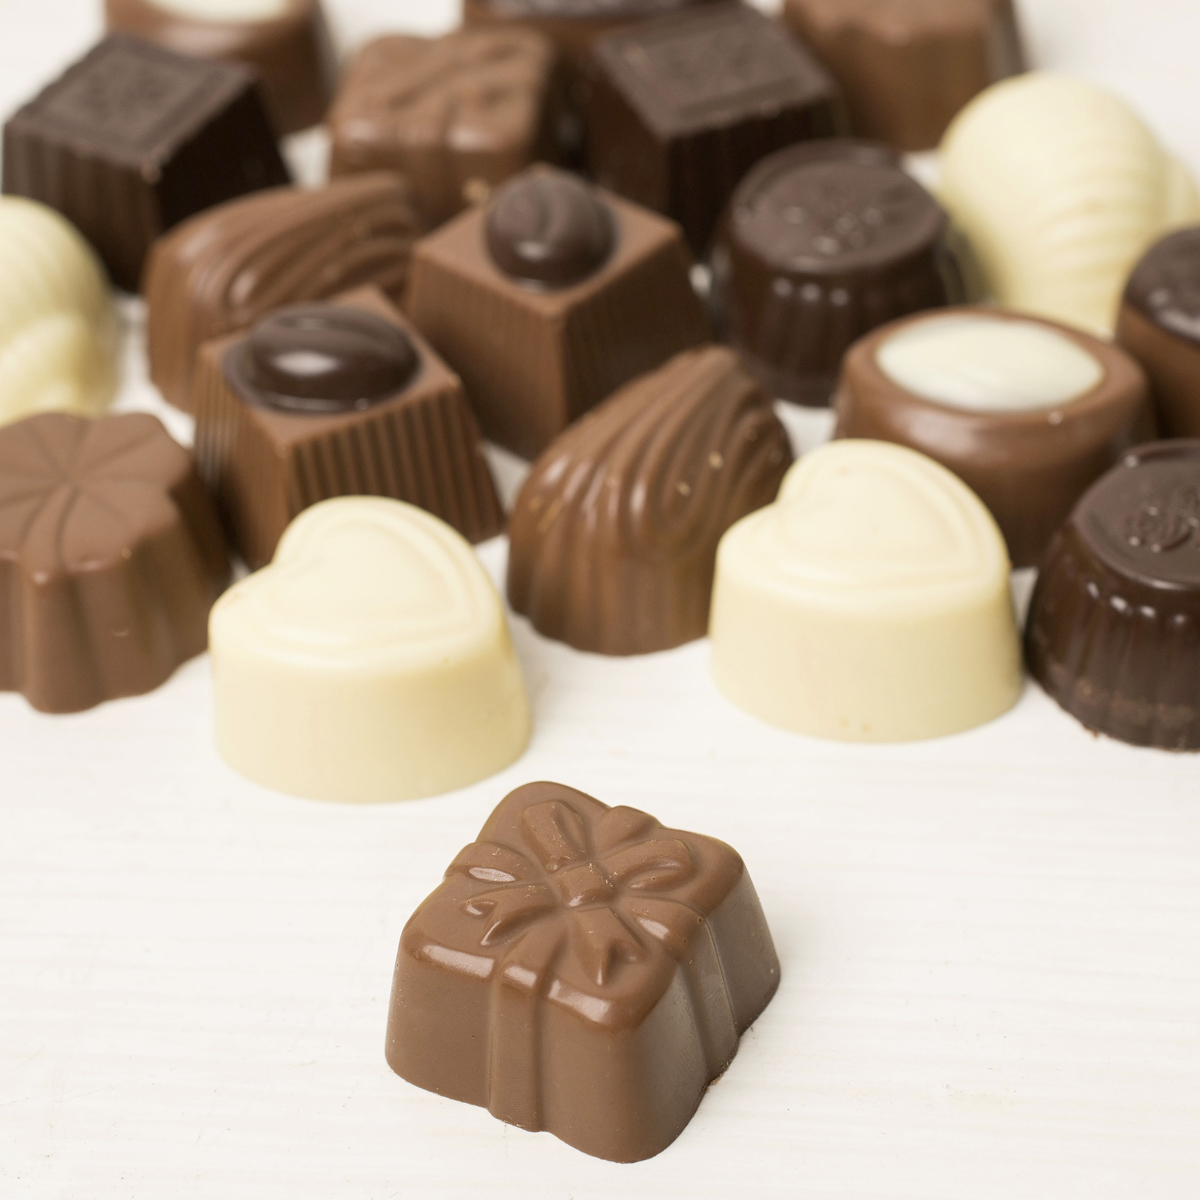 Photo Upload Belgian Chocolates - Heart & Stripes